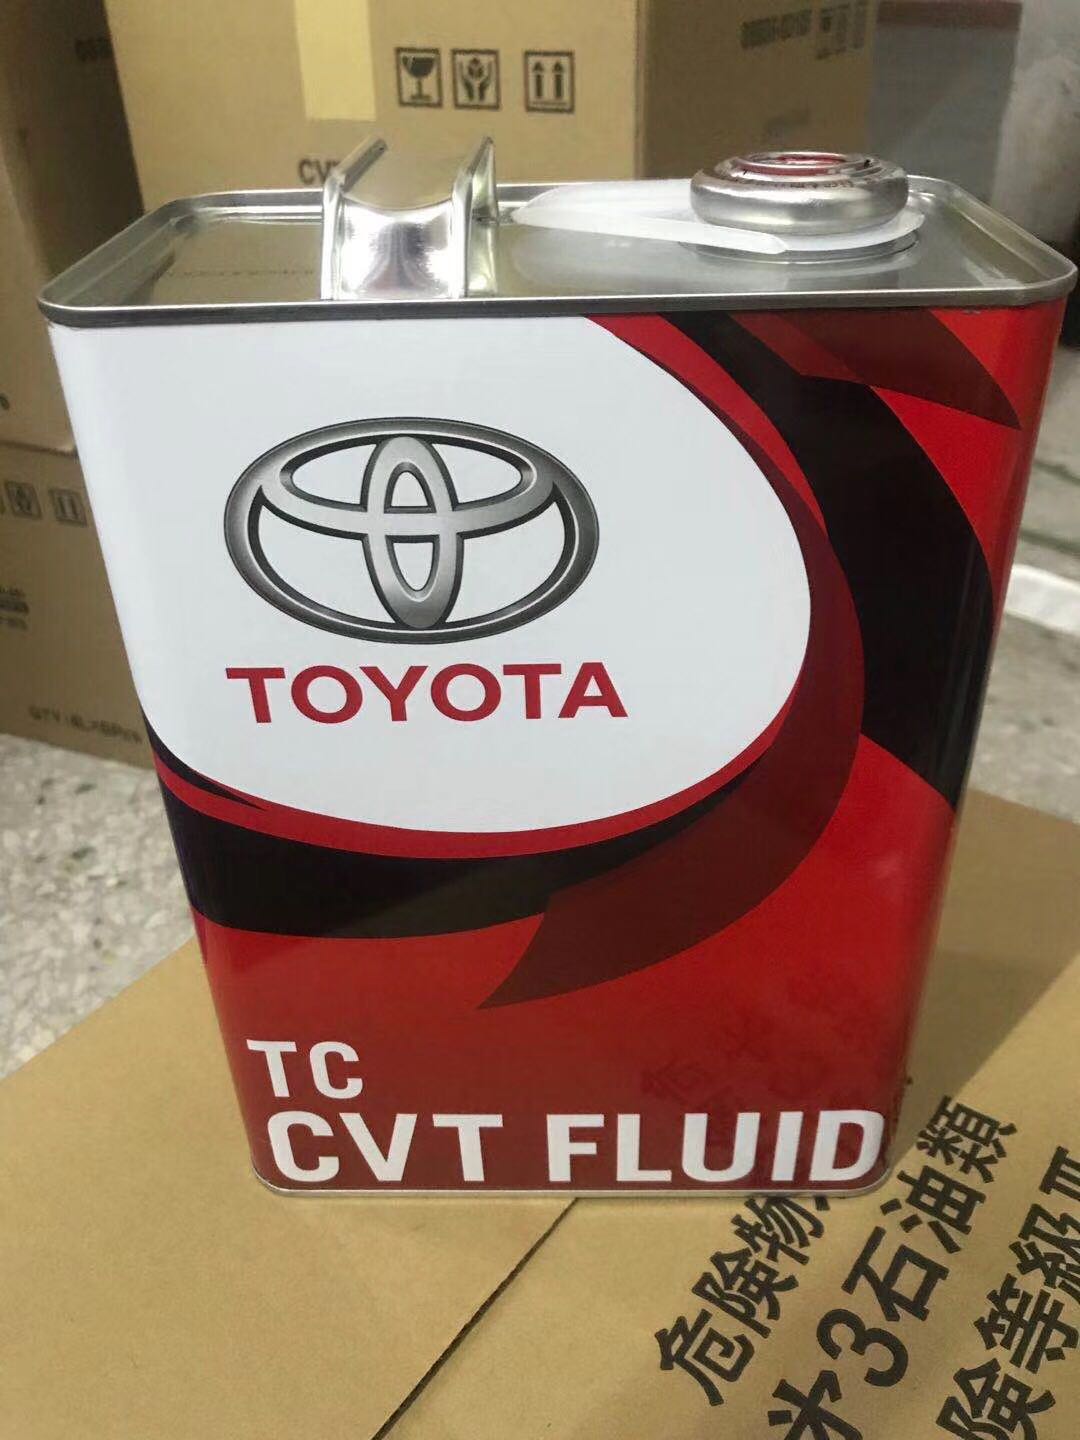 CNGZCJMG02 toyota tc cvt fluid - Toyota Transmax ATF  CVT Transmission Fluid Engine oil Gear oil